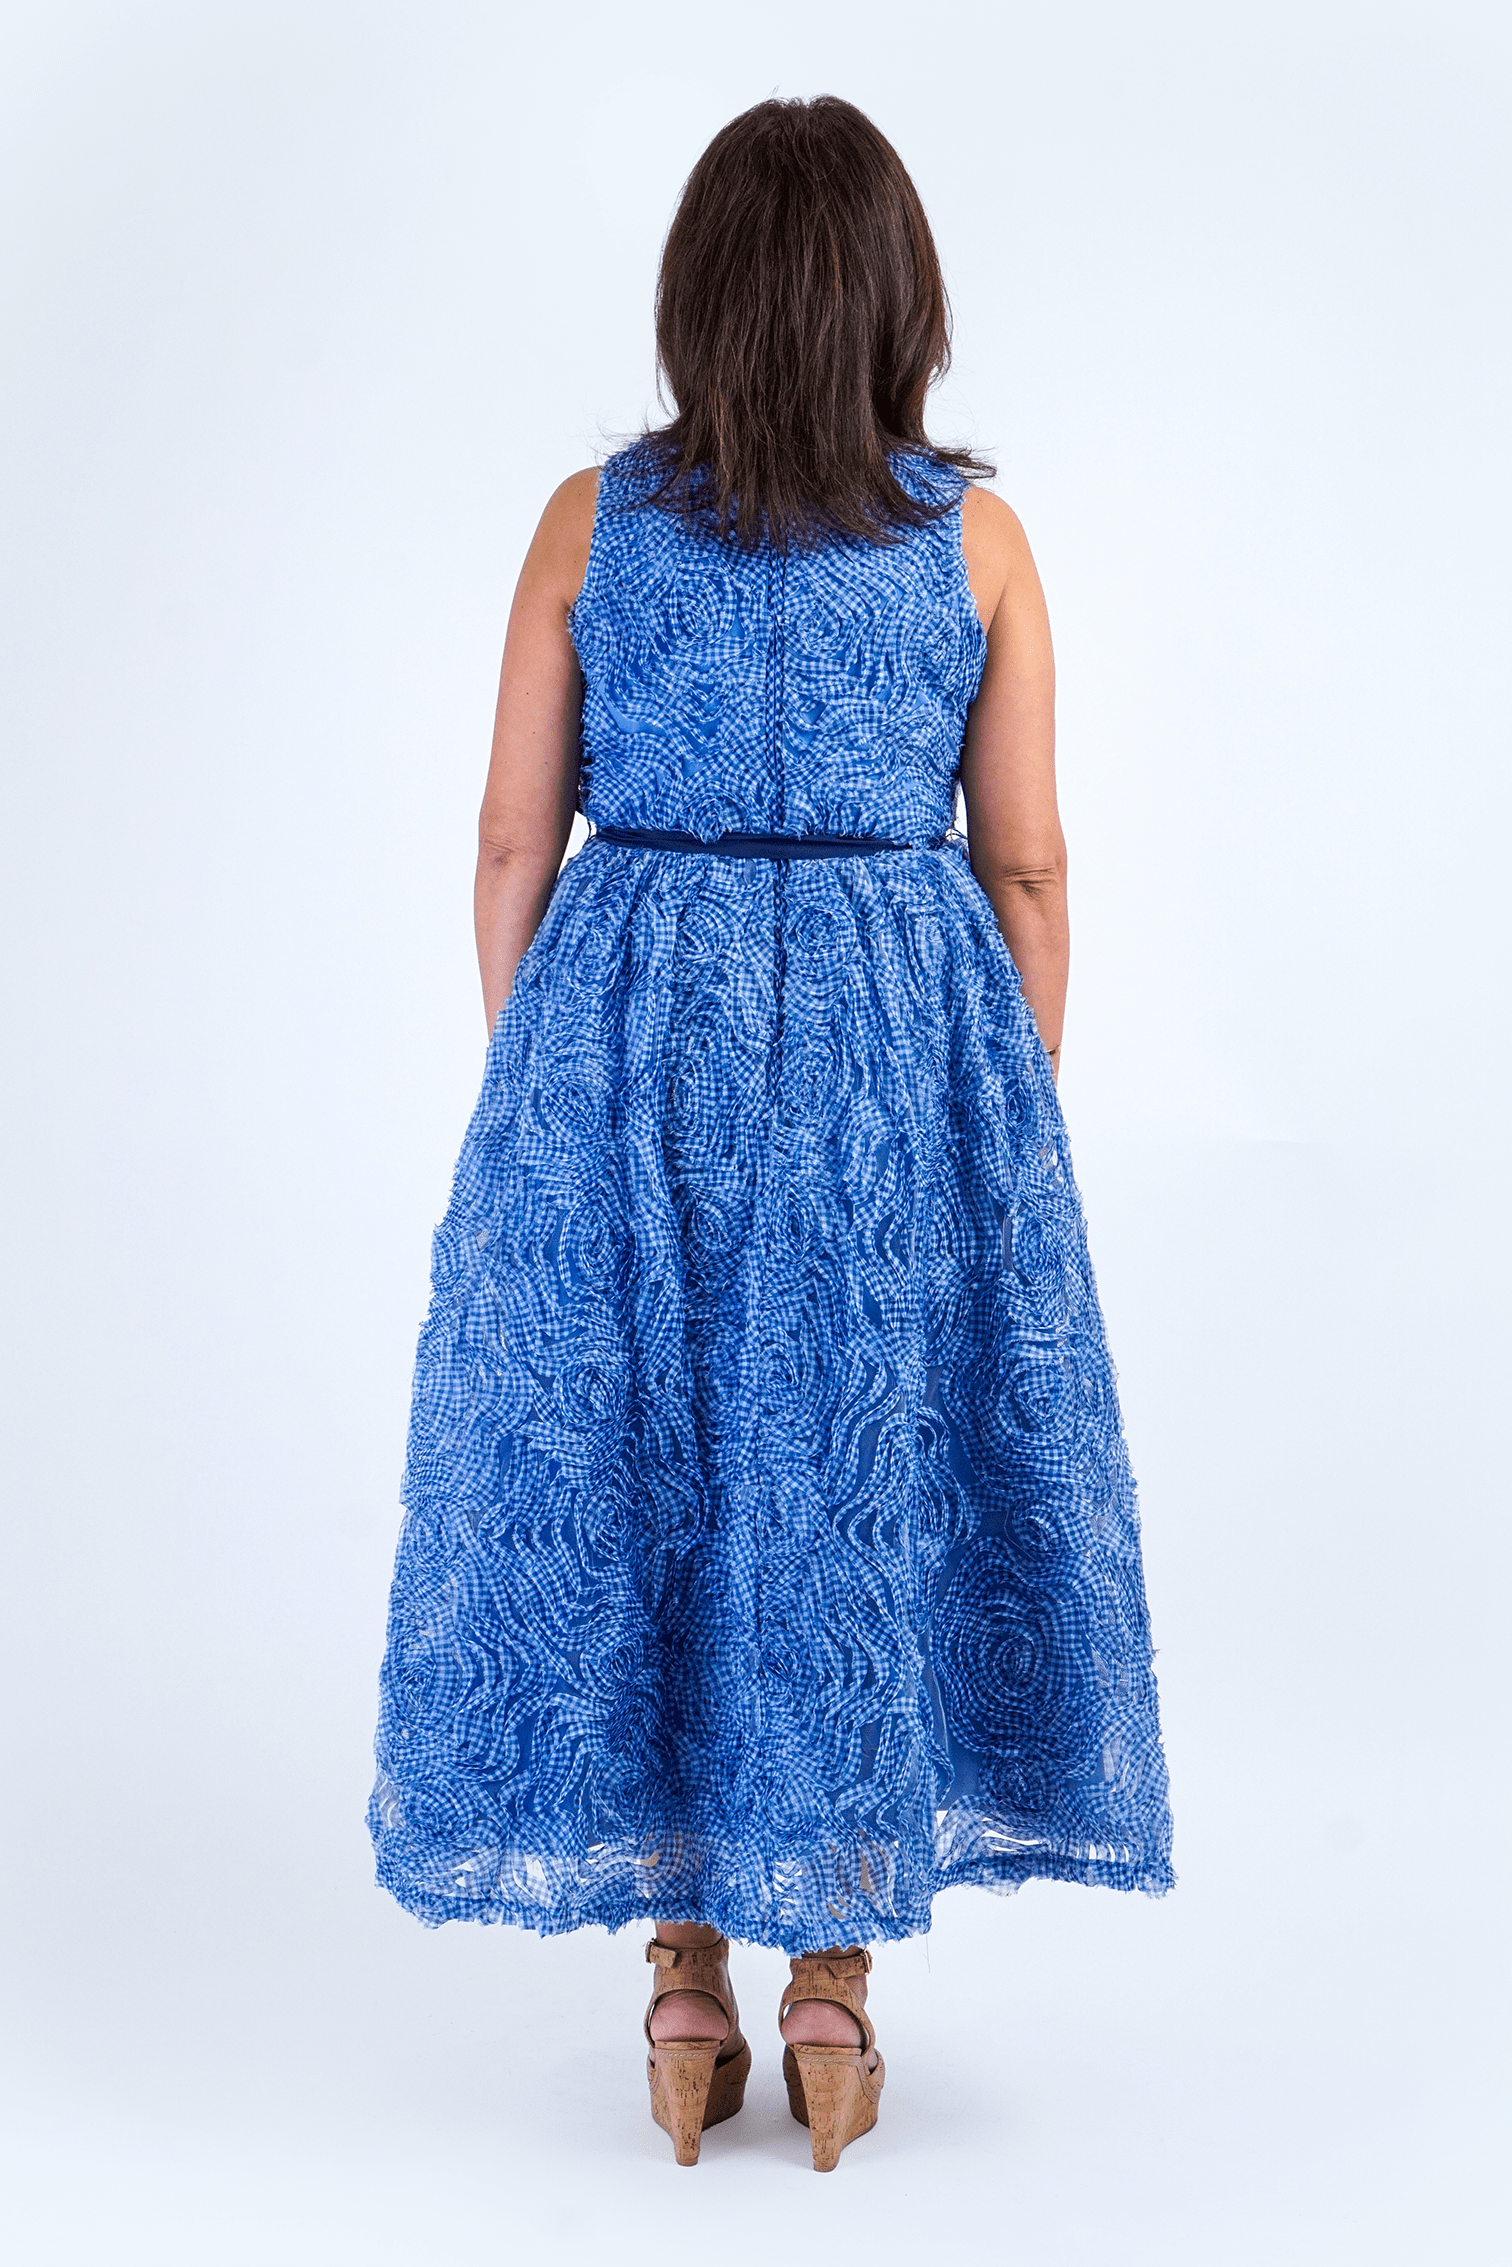 Chloe Dao Boutique DRESSES Blue 3D Floral Midi Dress